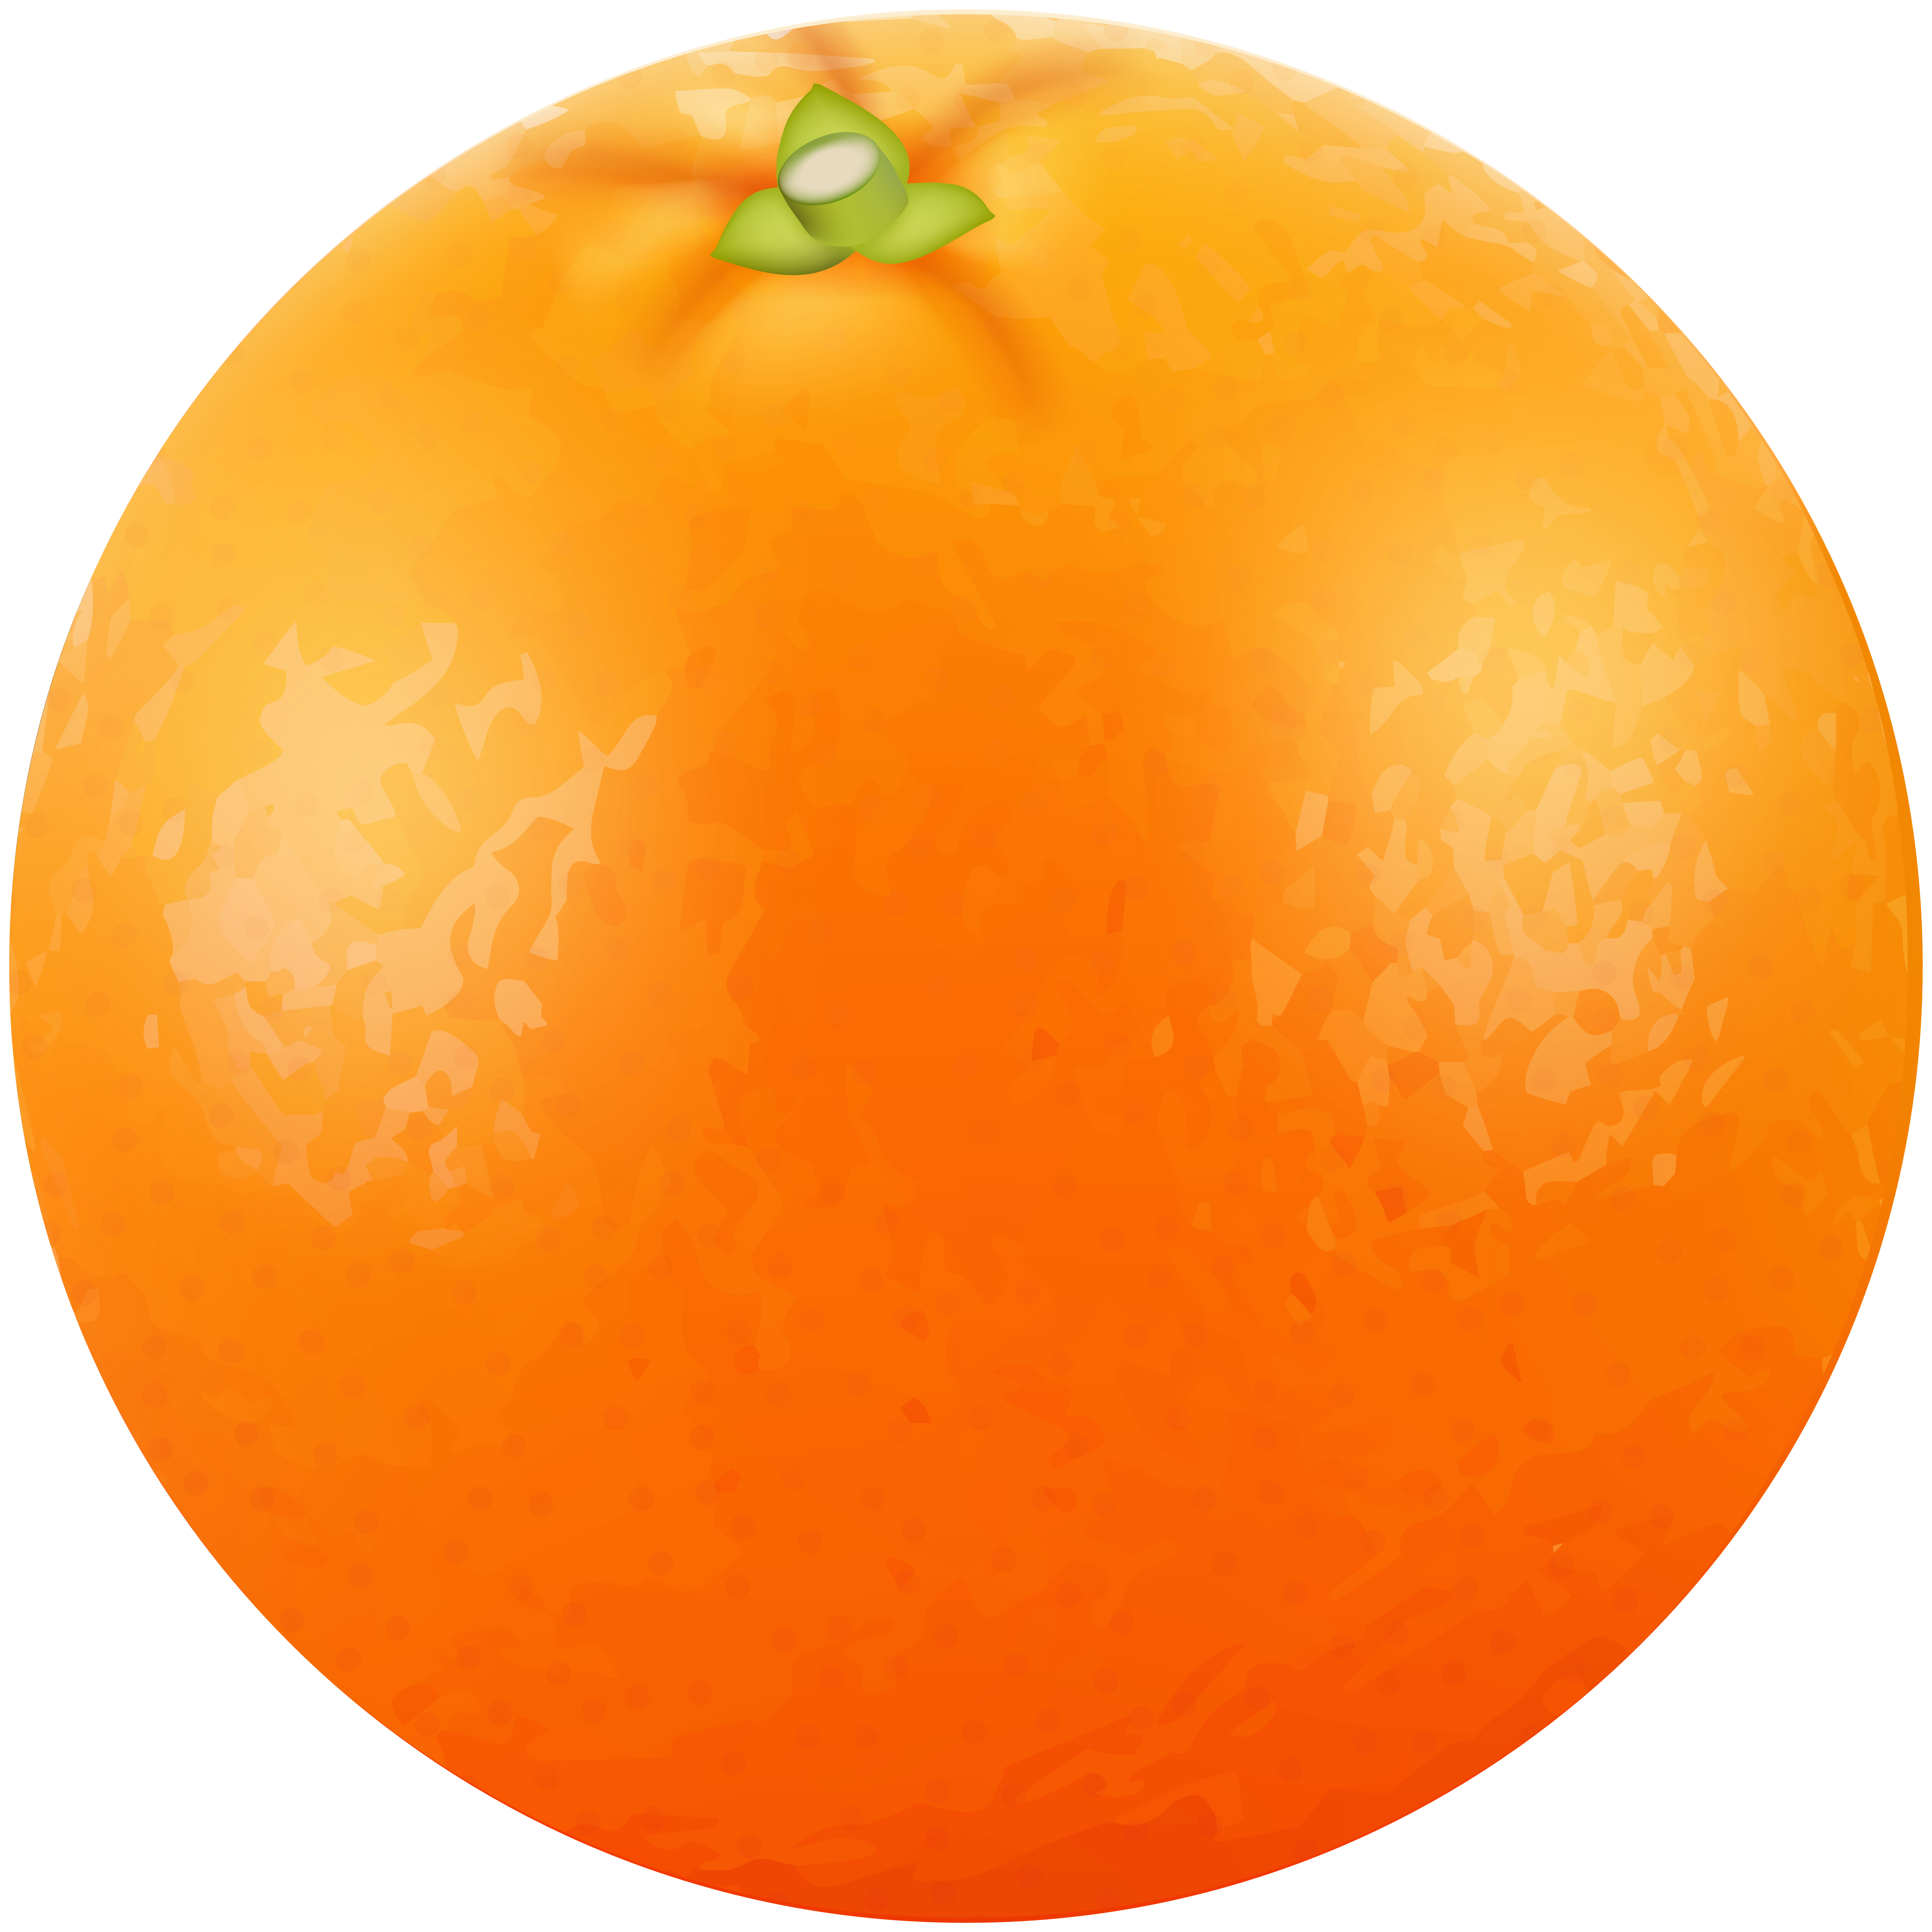 Orange Fruit PNG Clip Art Image